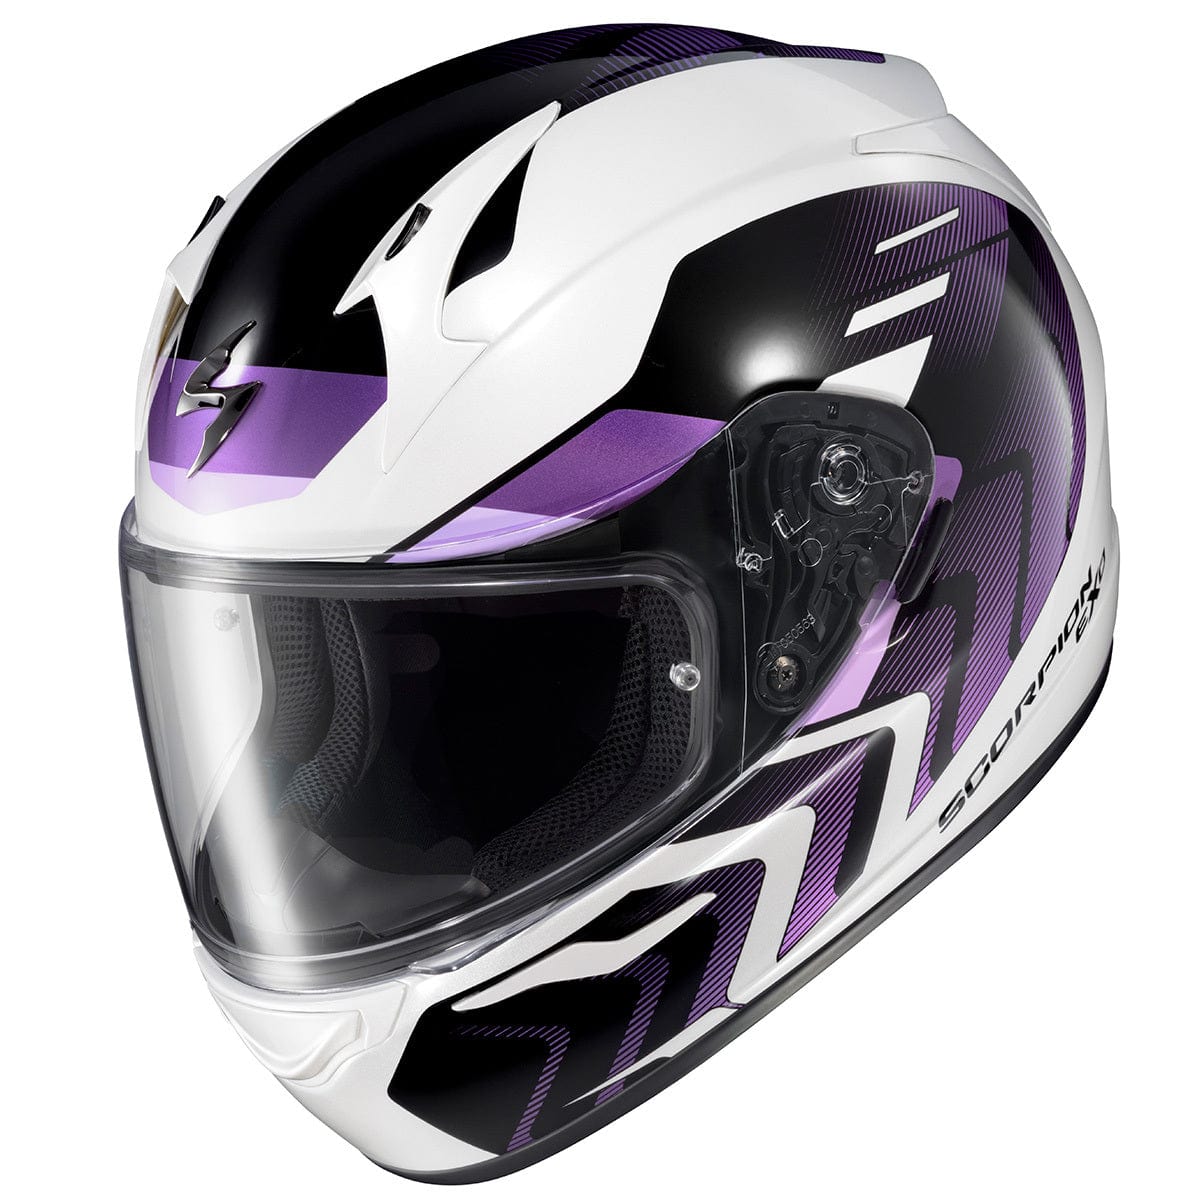 Western Powersports Full Face Helmet EXO-R320 Full-Faced Helmet by Scorpion Exo